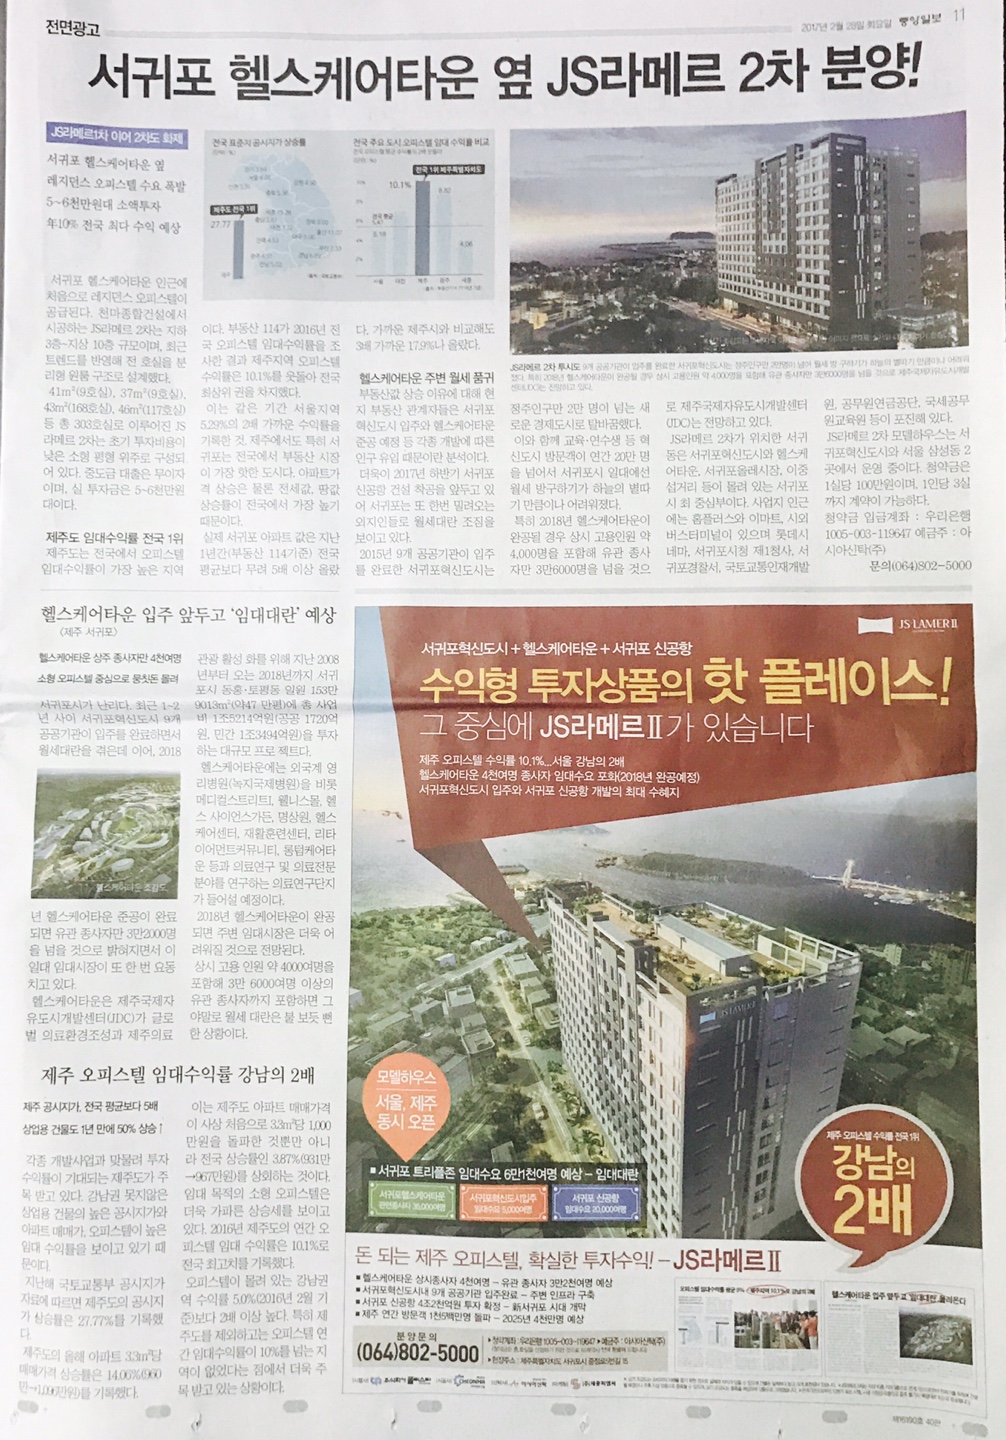 2월 28일 중앙일보 11 JS라메르 (9단21).jpg